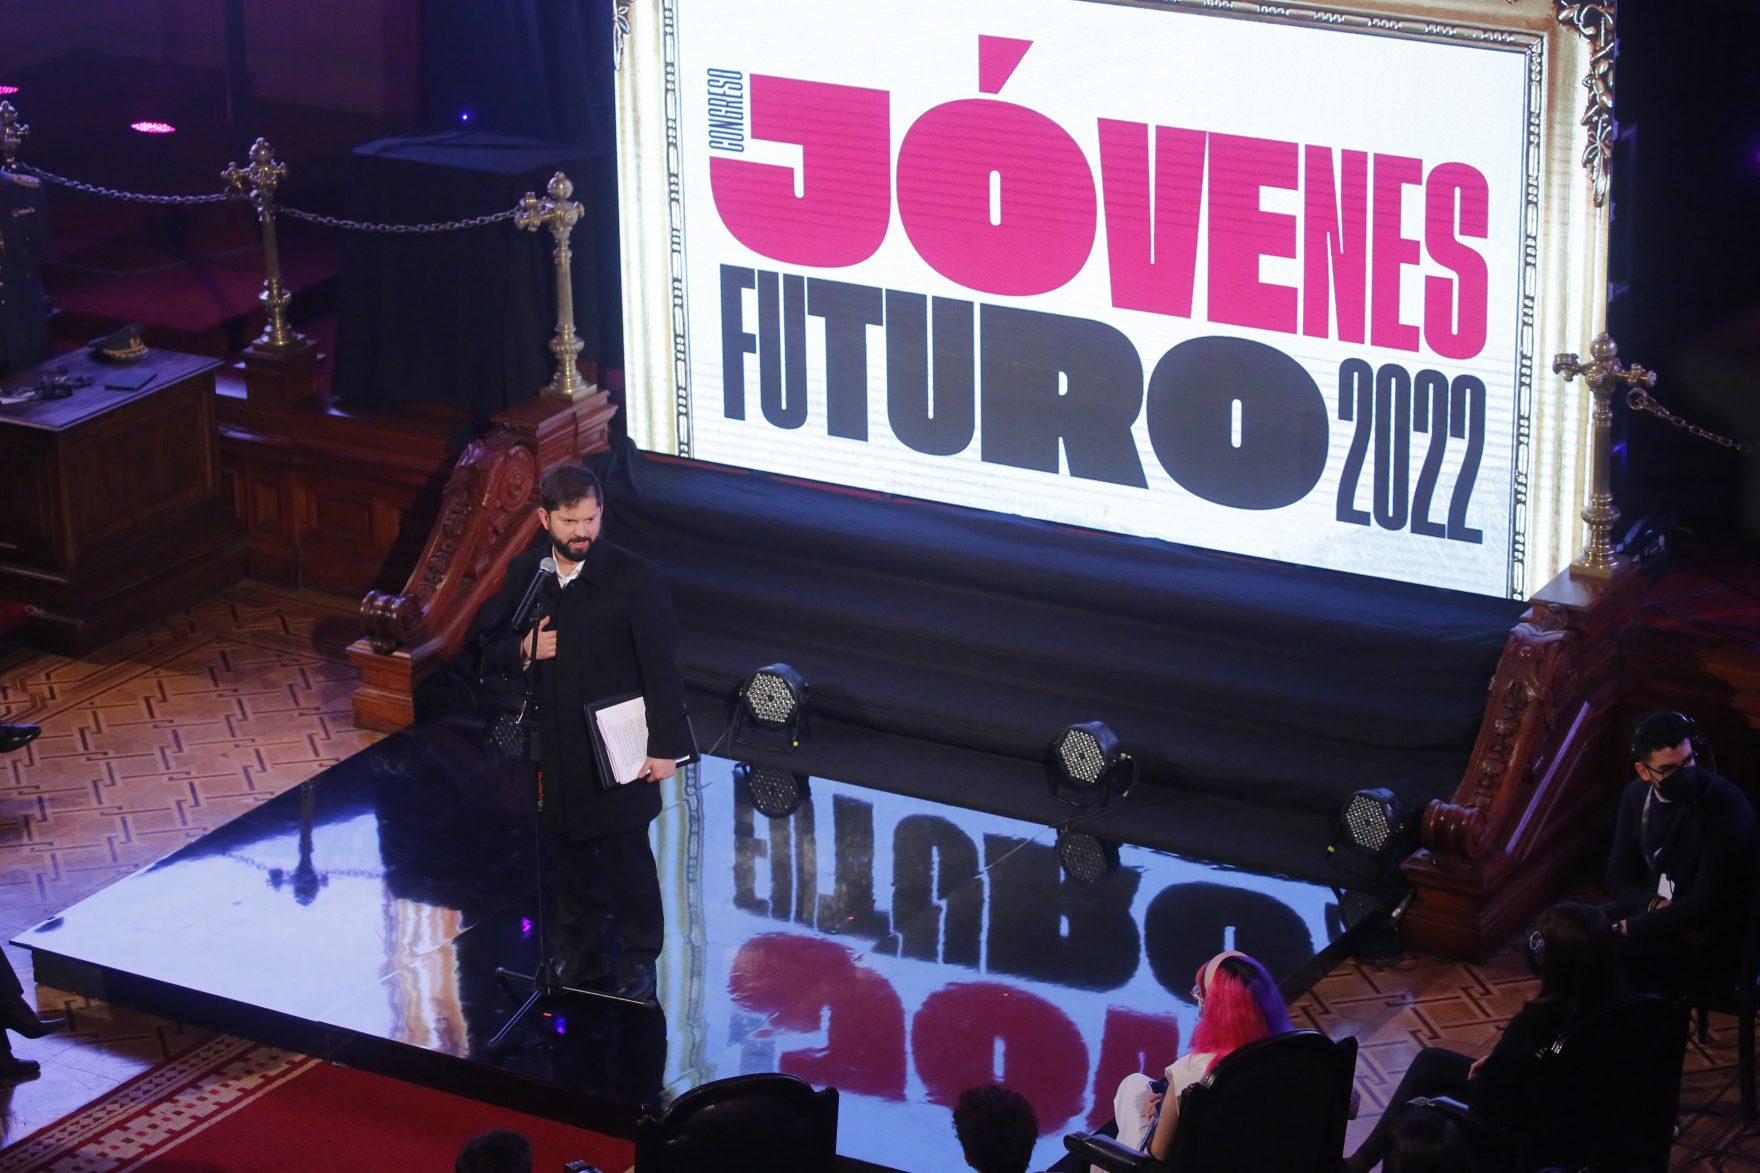 Santiago, 5 agosto 2022.
El Presidente Gabriel Boric Font participa en el Tercer Congreso Jóvenes Futuro 2022.
Marcelo Hernandez/Aton Chile